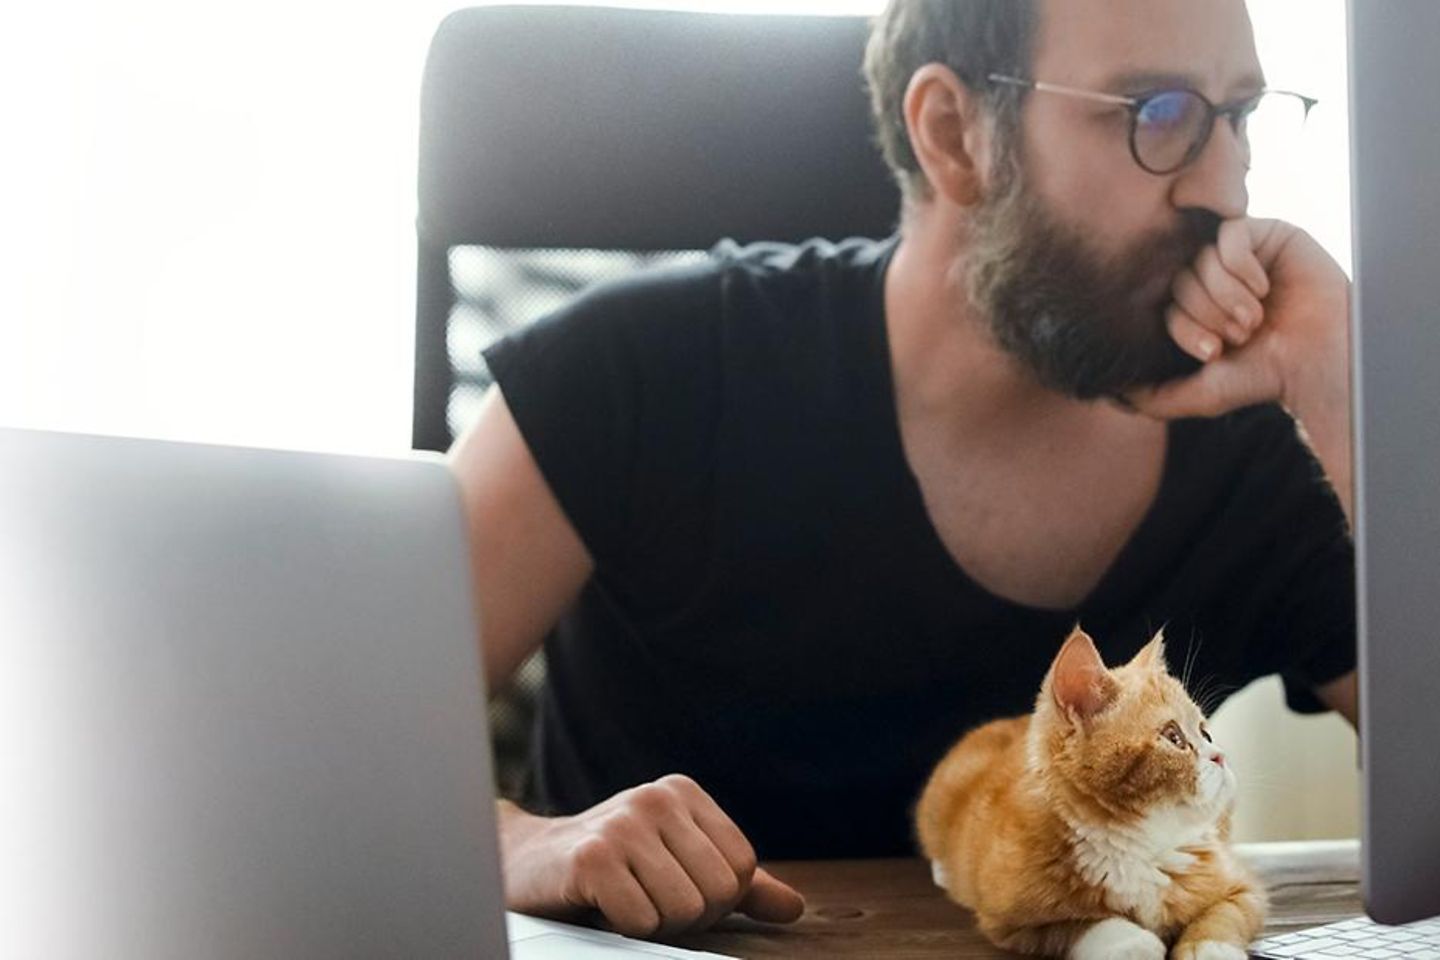 Ein Mann sitzt an einem Tisch und schaut auf einen Bildschirm, auf dem Tisch befinden sich ein Laptop und eine Katze.